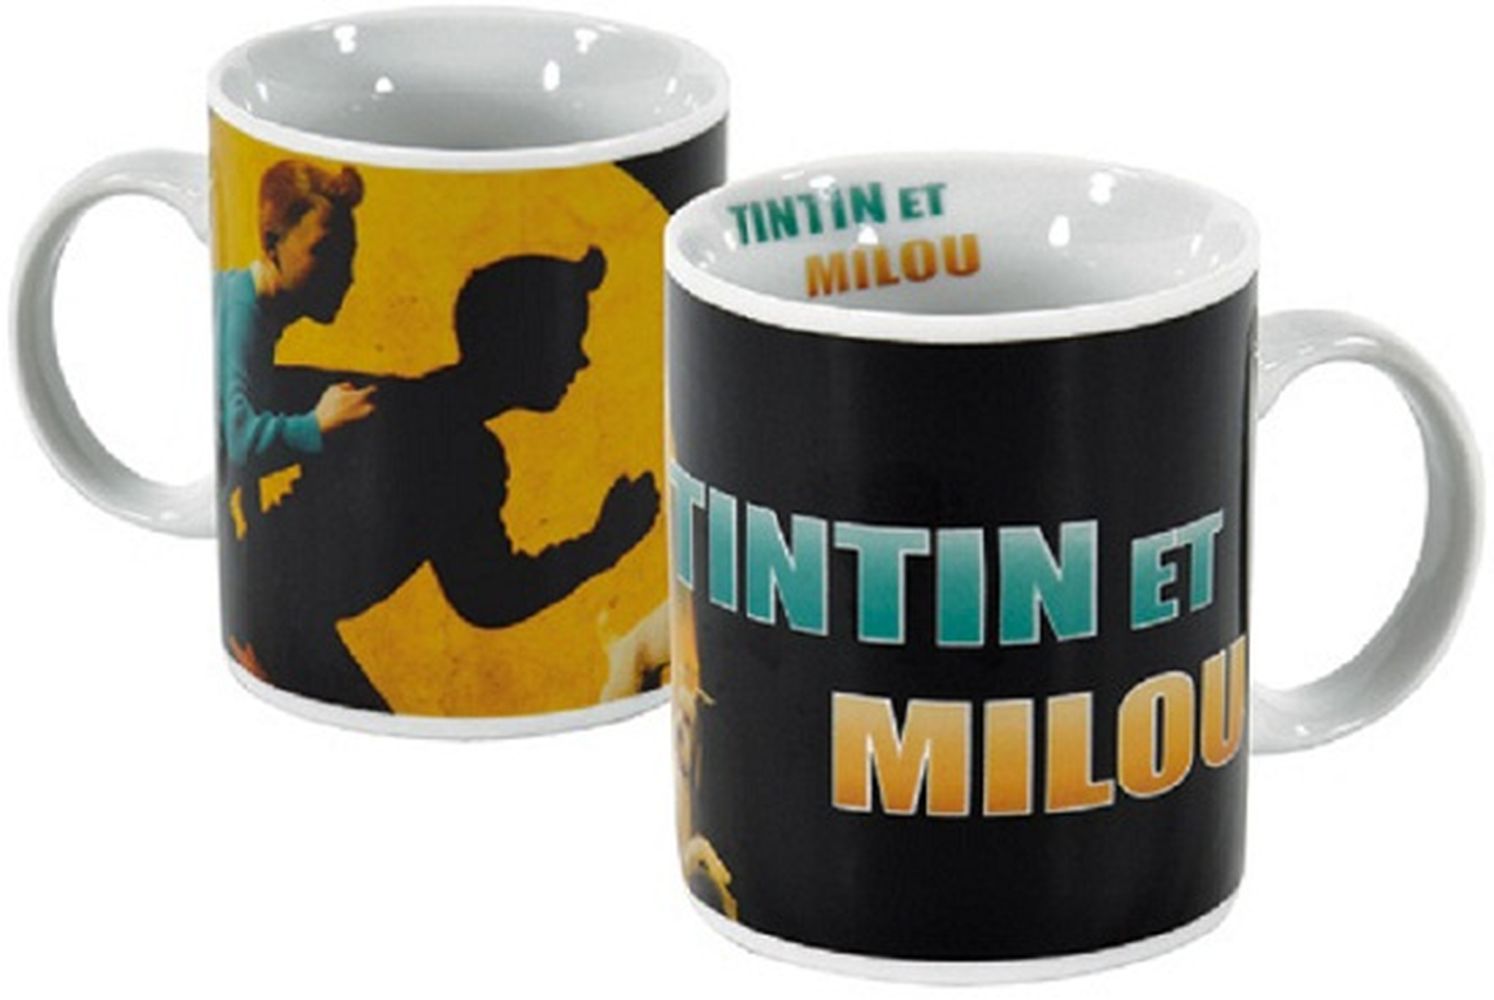 Mug Tintin et milou